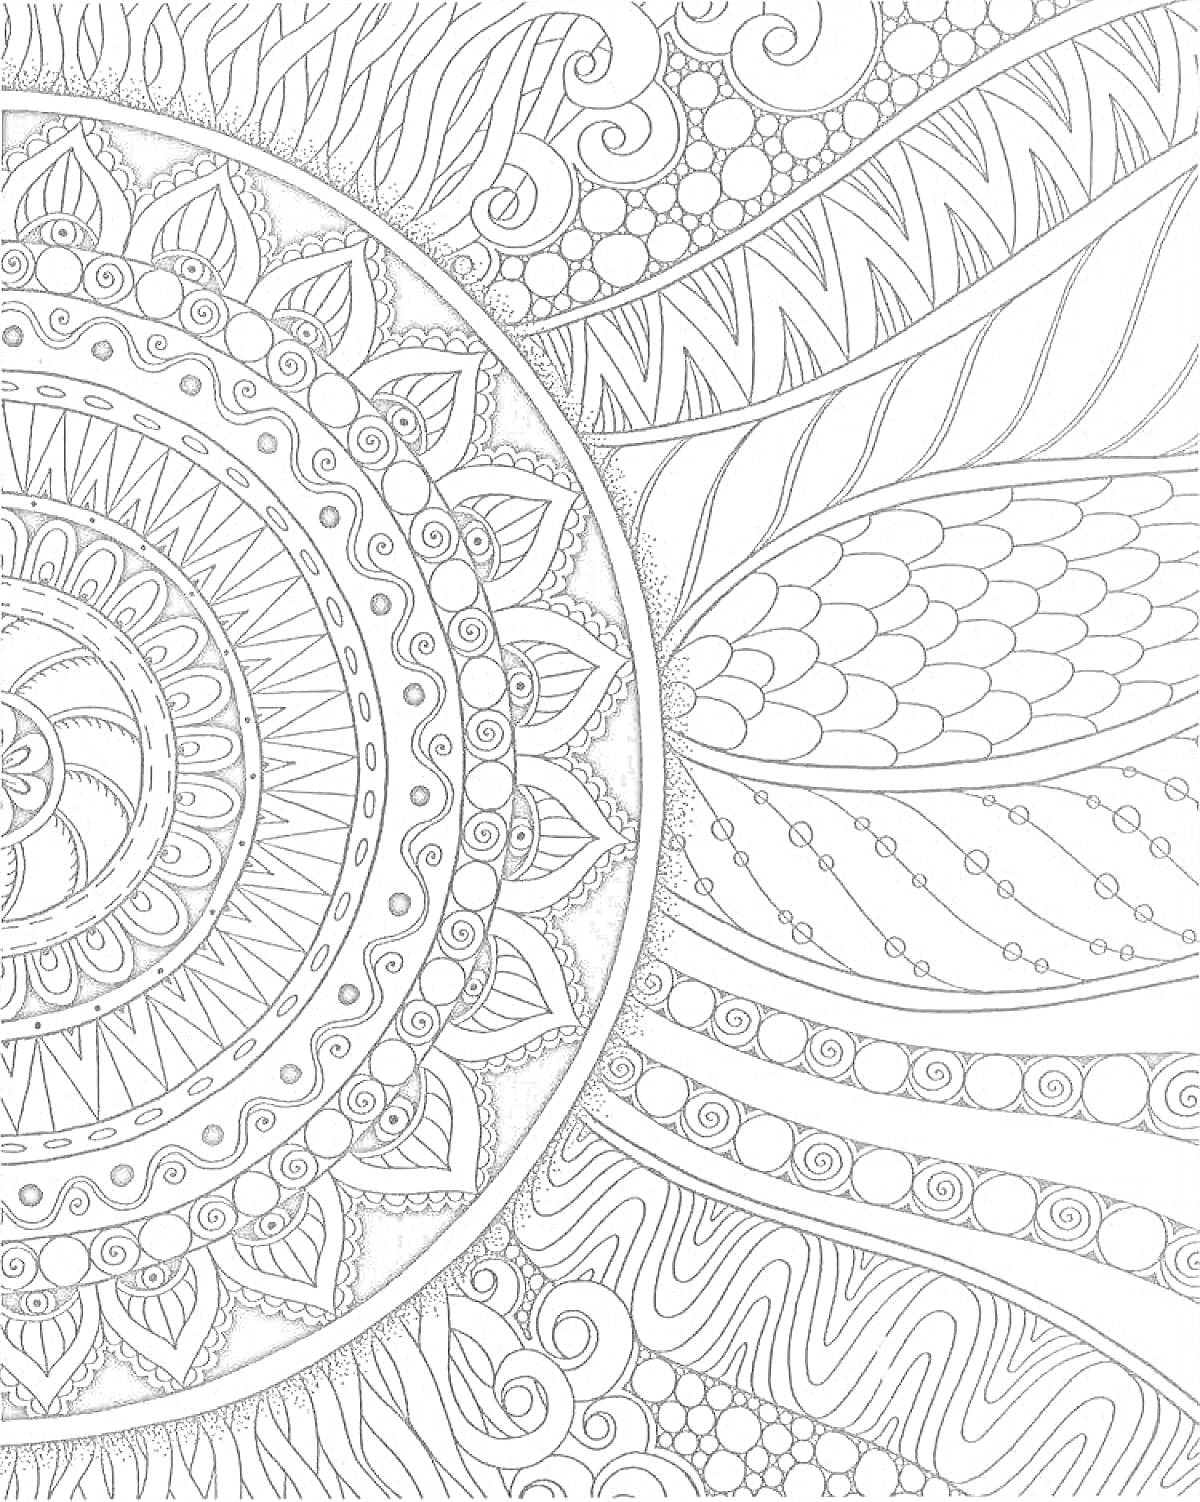 Раскраска Зендудл с мандалой, рыбьей чешуей, спиралями, полосами, волнами и точками